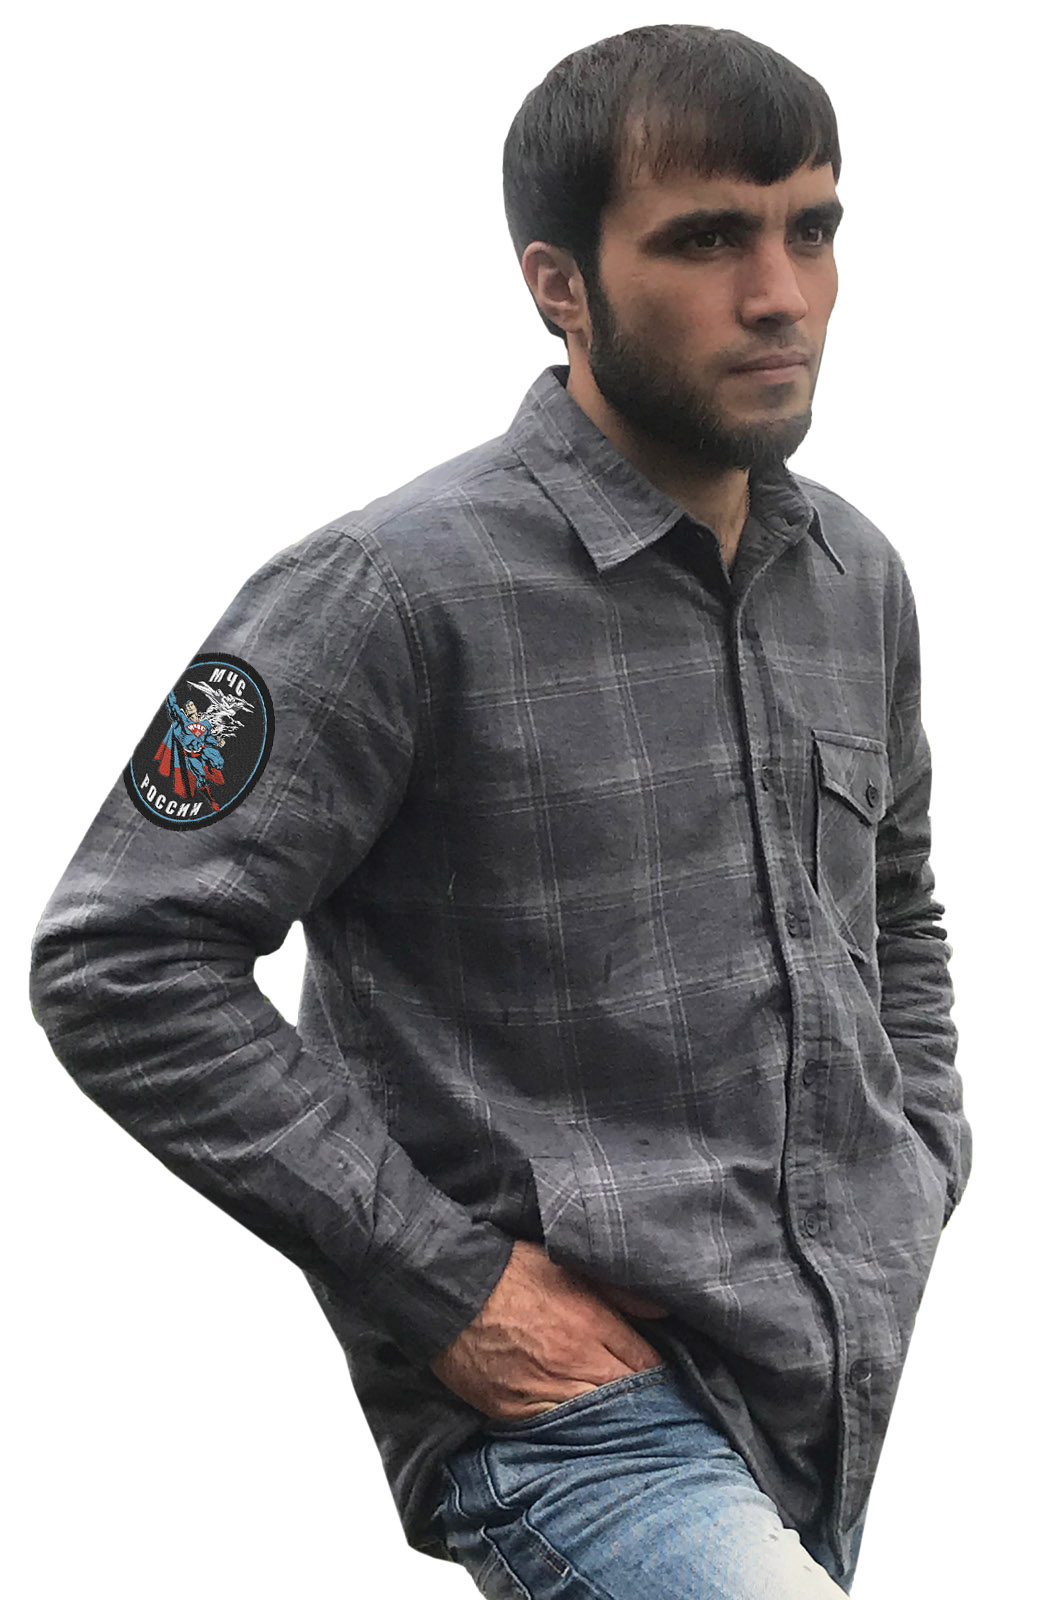 Купить практичную мужскую рубашку с вышитым шевроном МЧС России в подарок мужчине